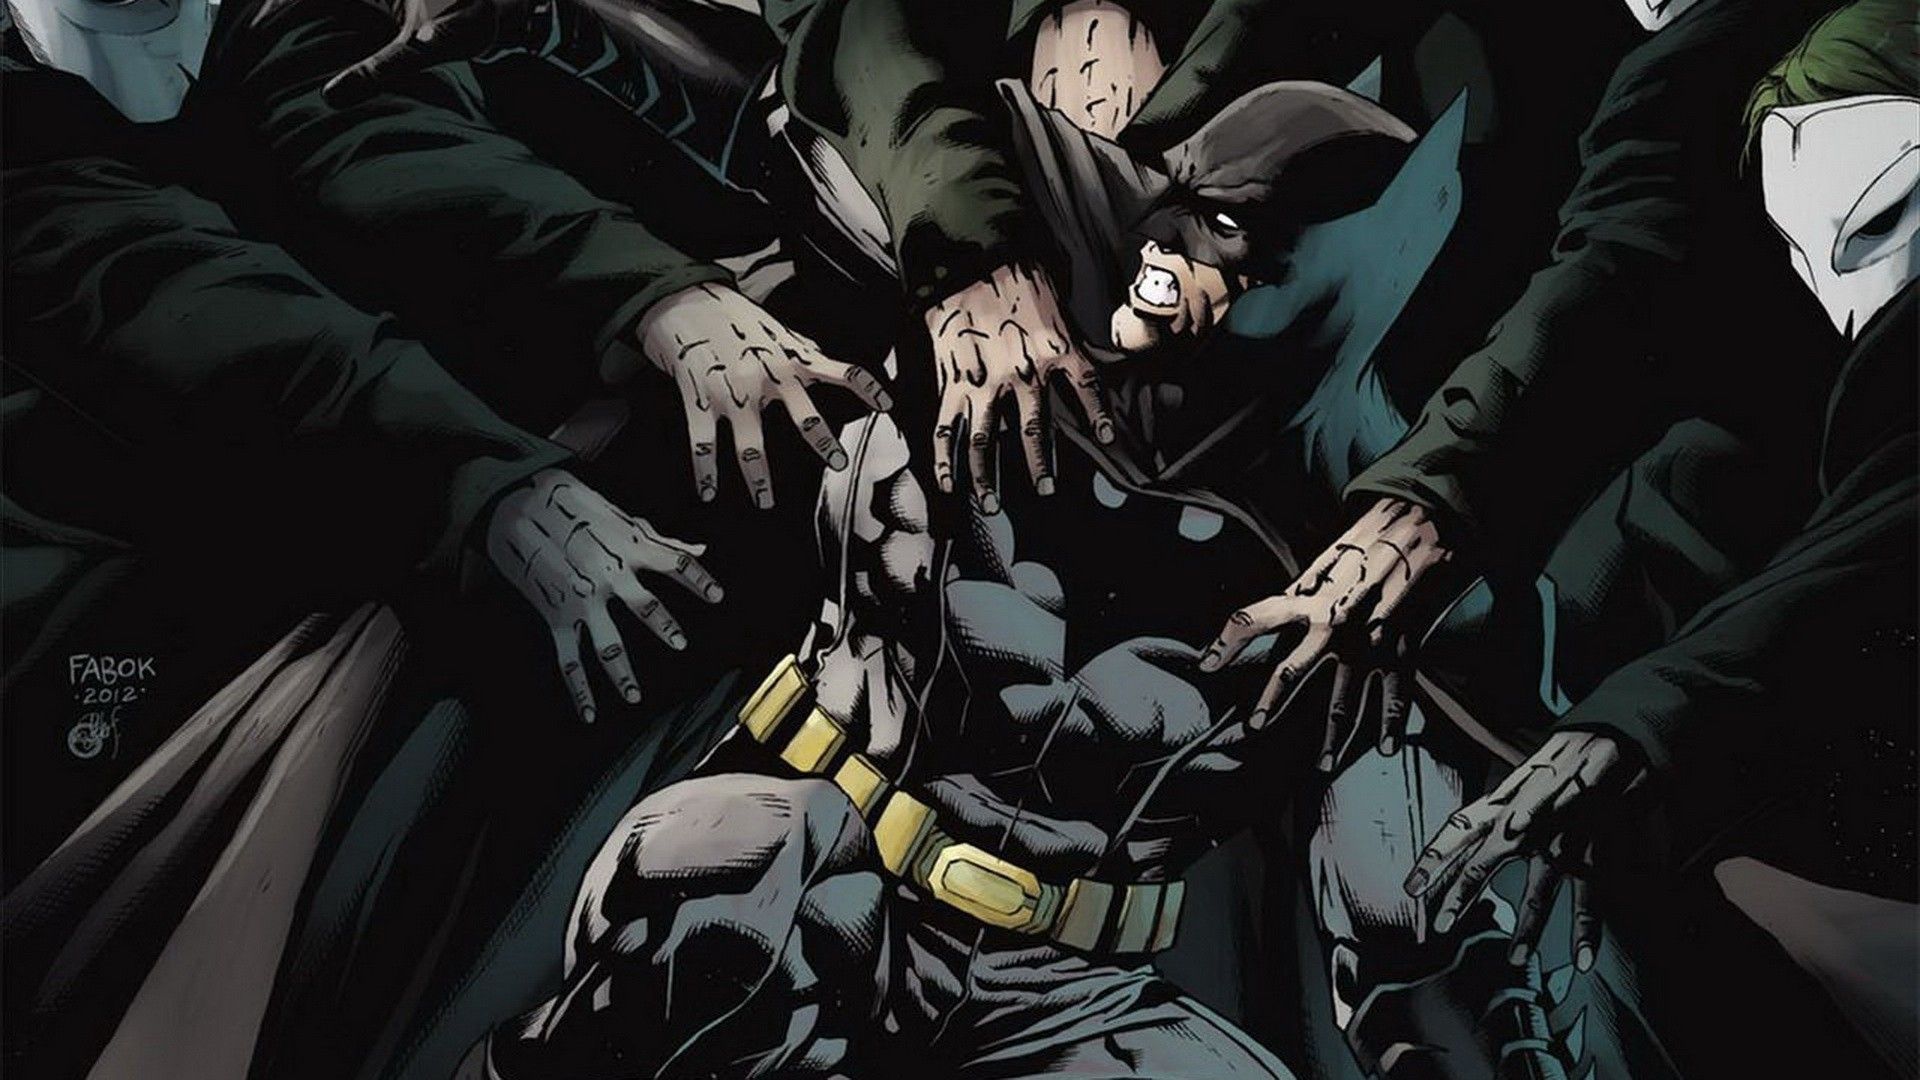 Batman New 52 Wallpapers - Wallpaper Cave